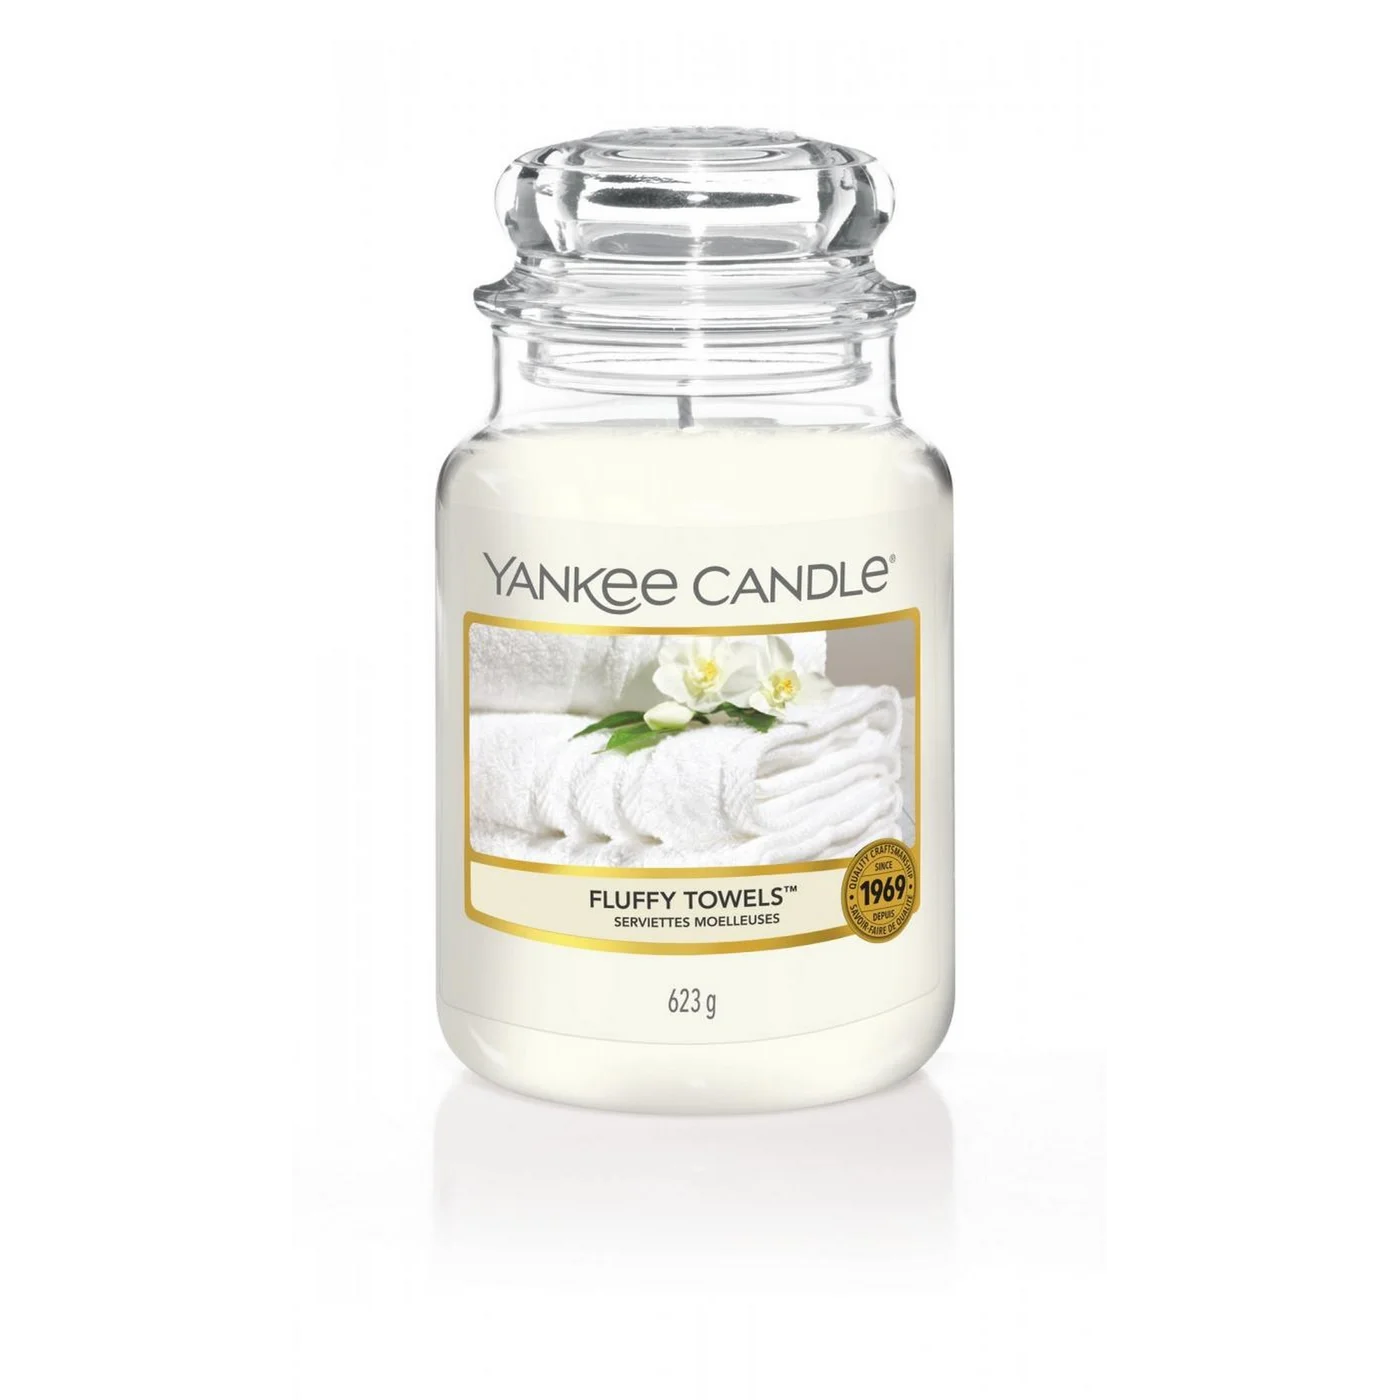 YANKEE CANDLE - Duża świeca zapachowa w słoiku - Fluffy Towels